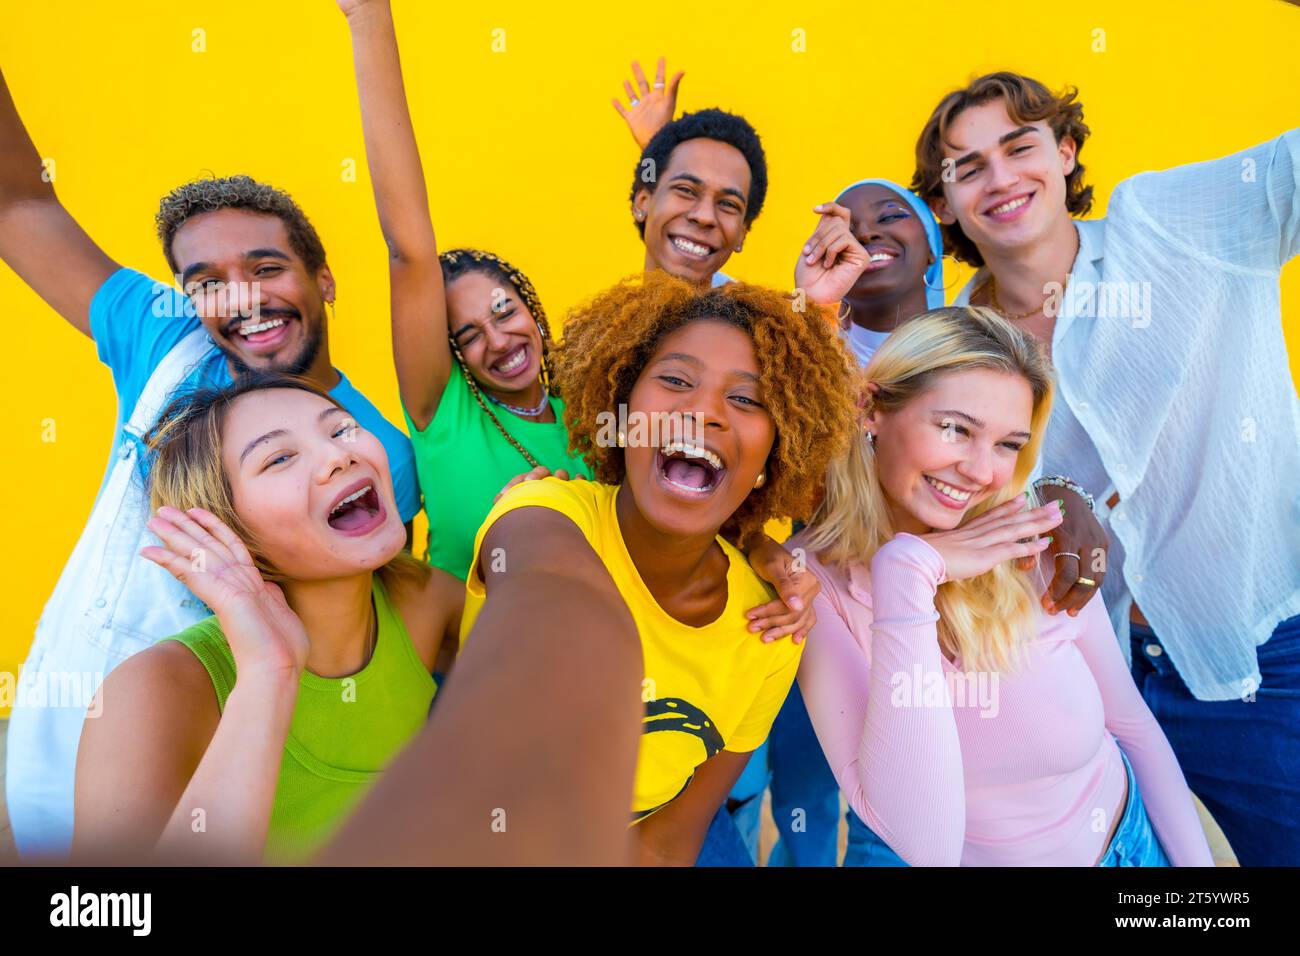 Frontalansicht von glücklichen verschiedenen Freunden, die ein Selfie machen, lächelnd und lachend auf gelbem Hintergrund Stockfoto